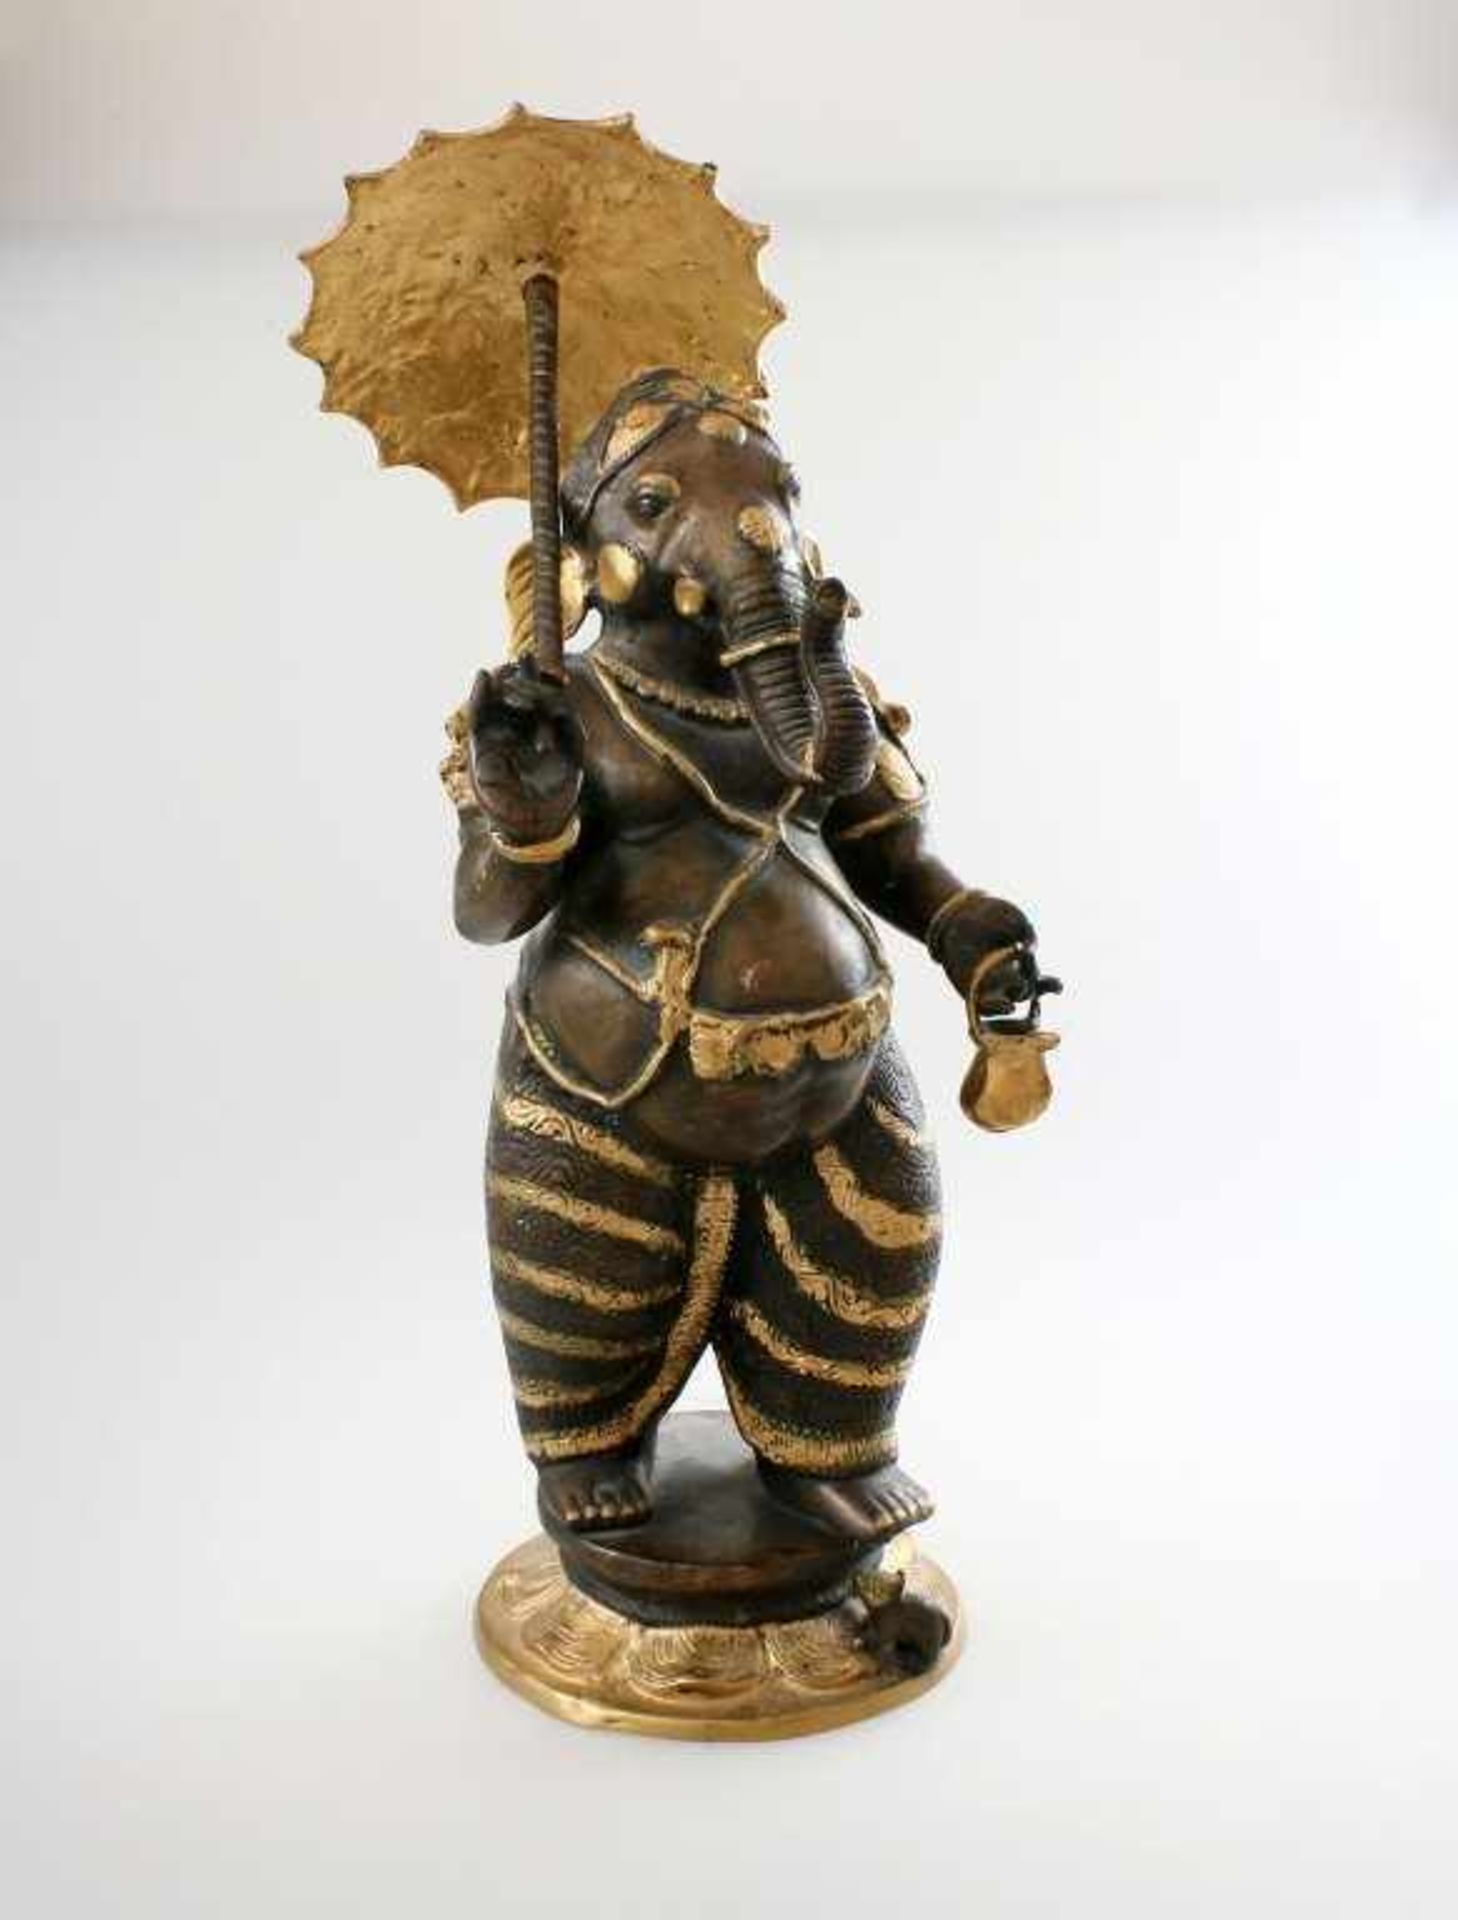 Ganesha mit Schirm - Nordindien In der rechten Schirm, in der linken Hand Teegefäß haltend,